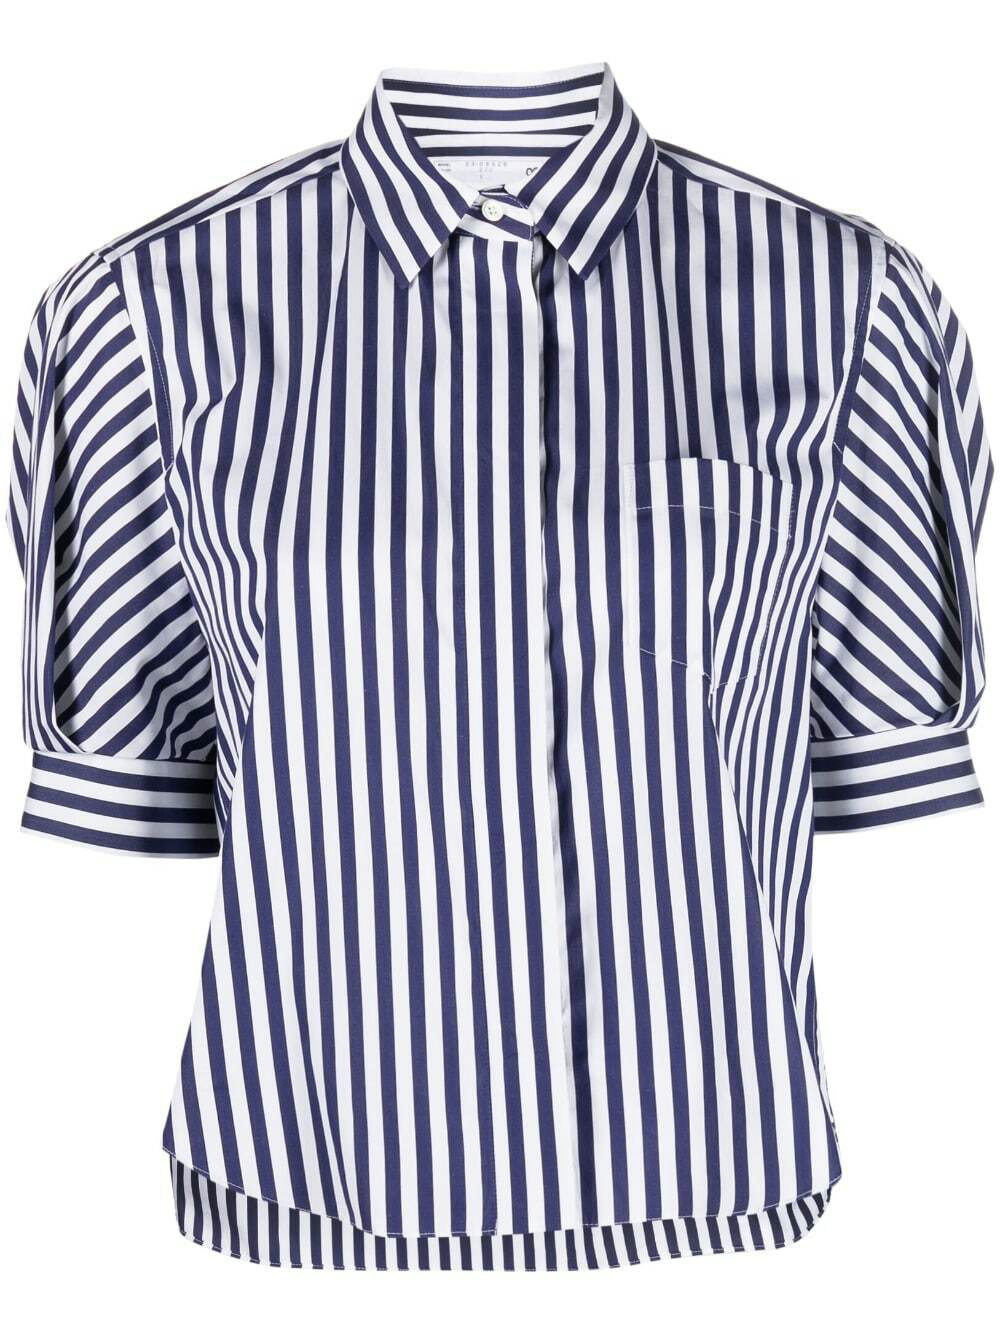 最新入荷】 sacai トップス 20ss shirt stripe docking トップス ...